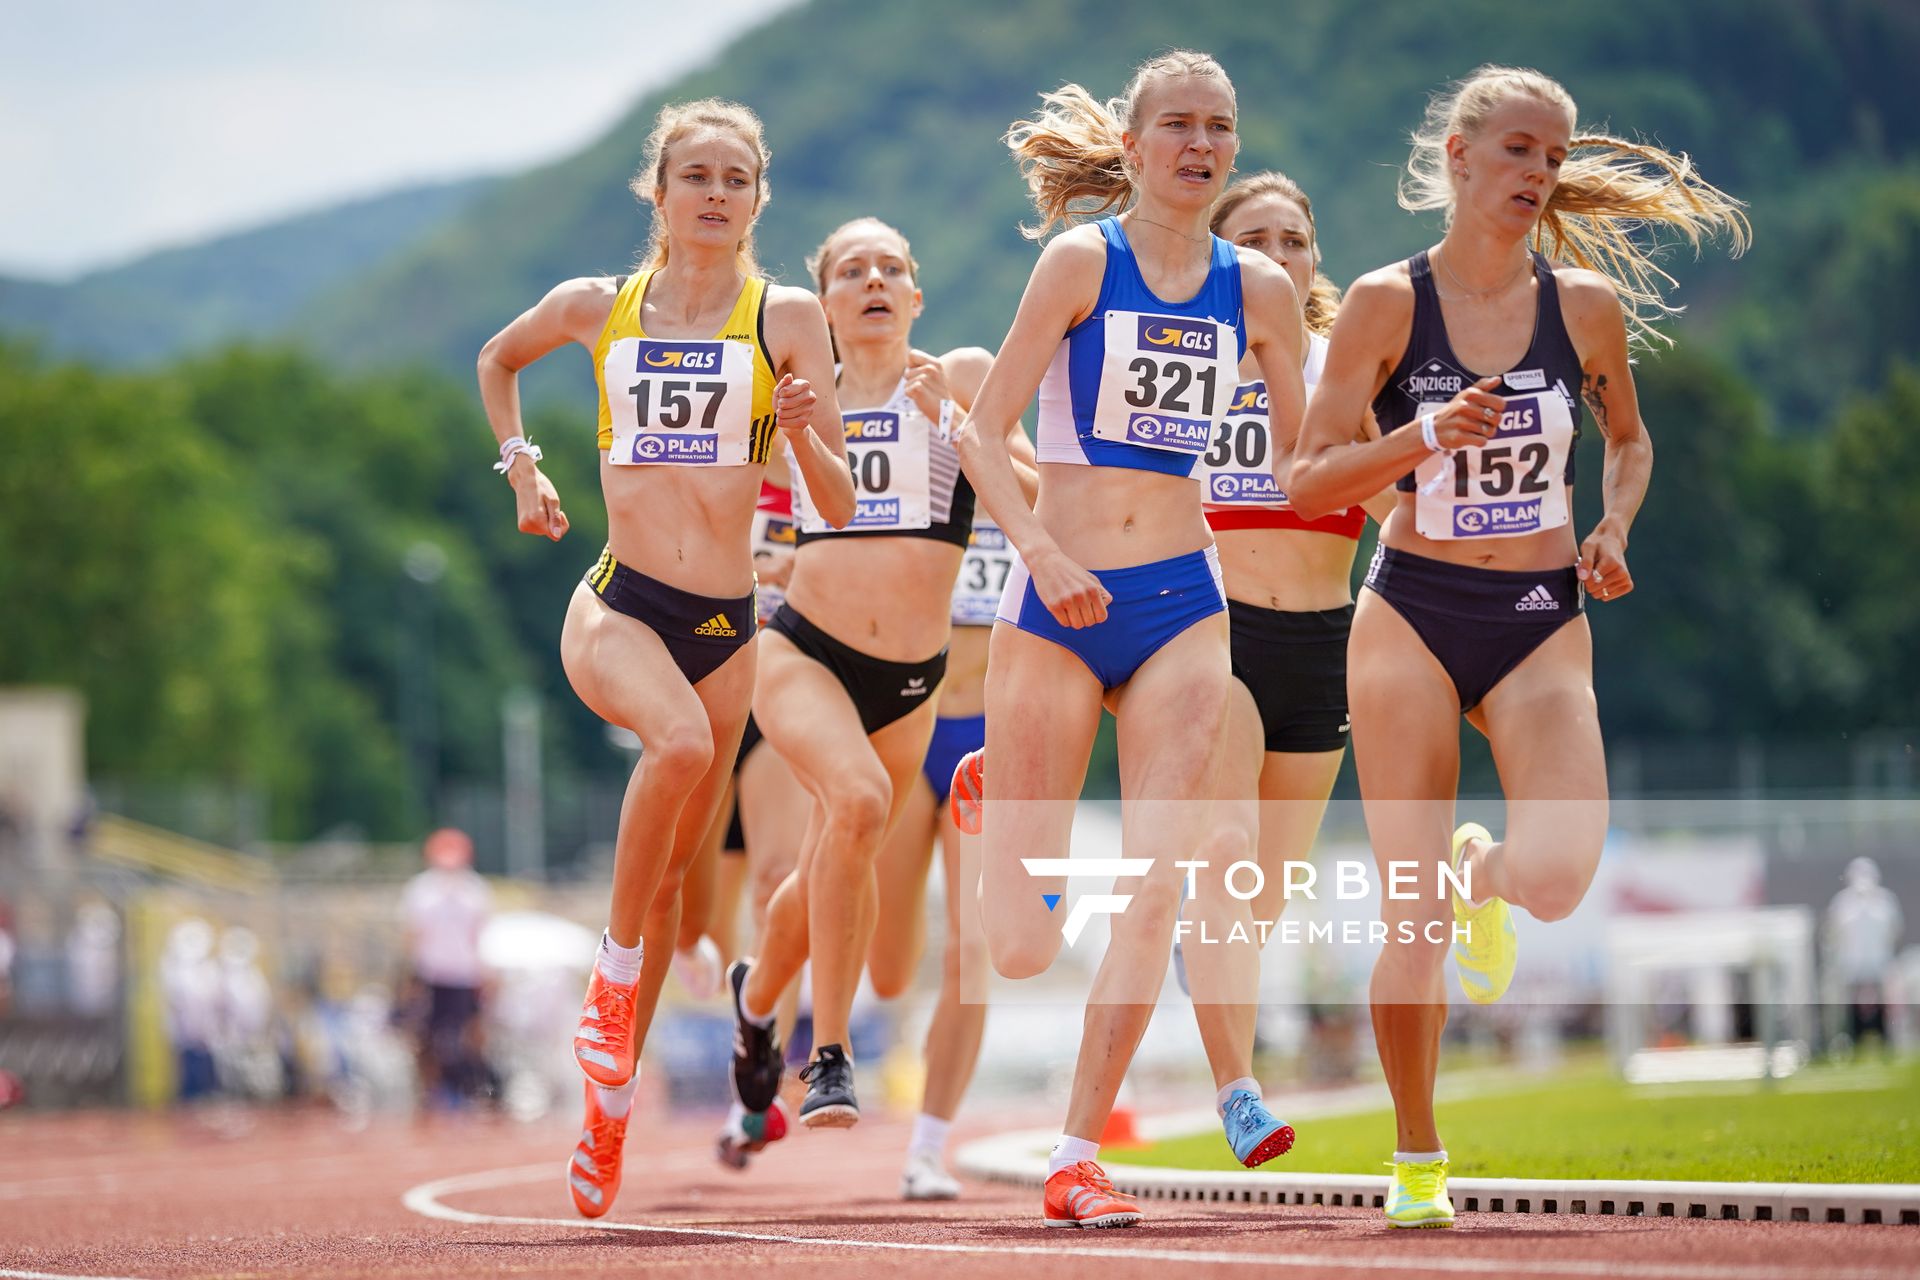 800m Vorlauf mit Xenia Krebs (VfL Loeningen),Majtie Kolberg (LG Kreis Ahrweiler) und Sophia Volkmer (TV Wetzlar) am 26.06.2021 waehrend den deutschen U23 Leichtathletik-Meisterschaften 2021 im Stadion Oberwerth in Koblenz